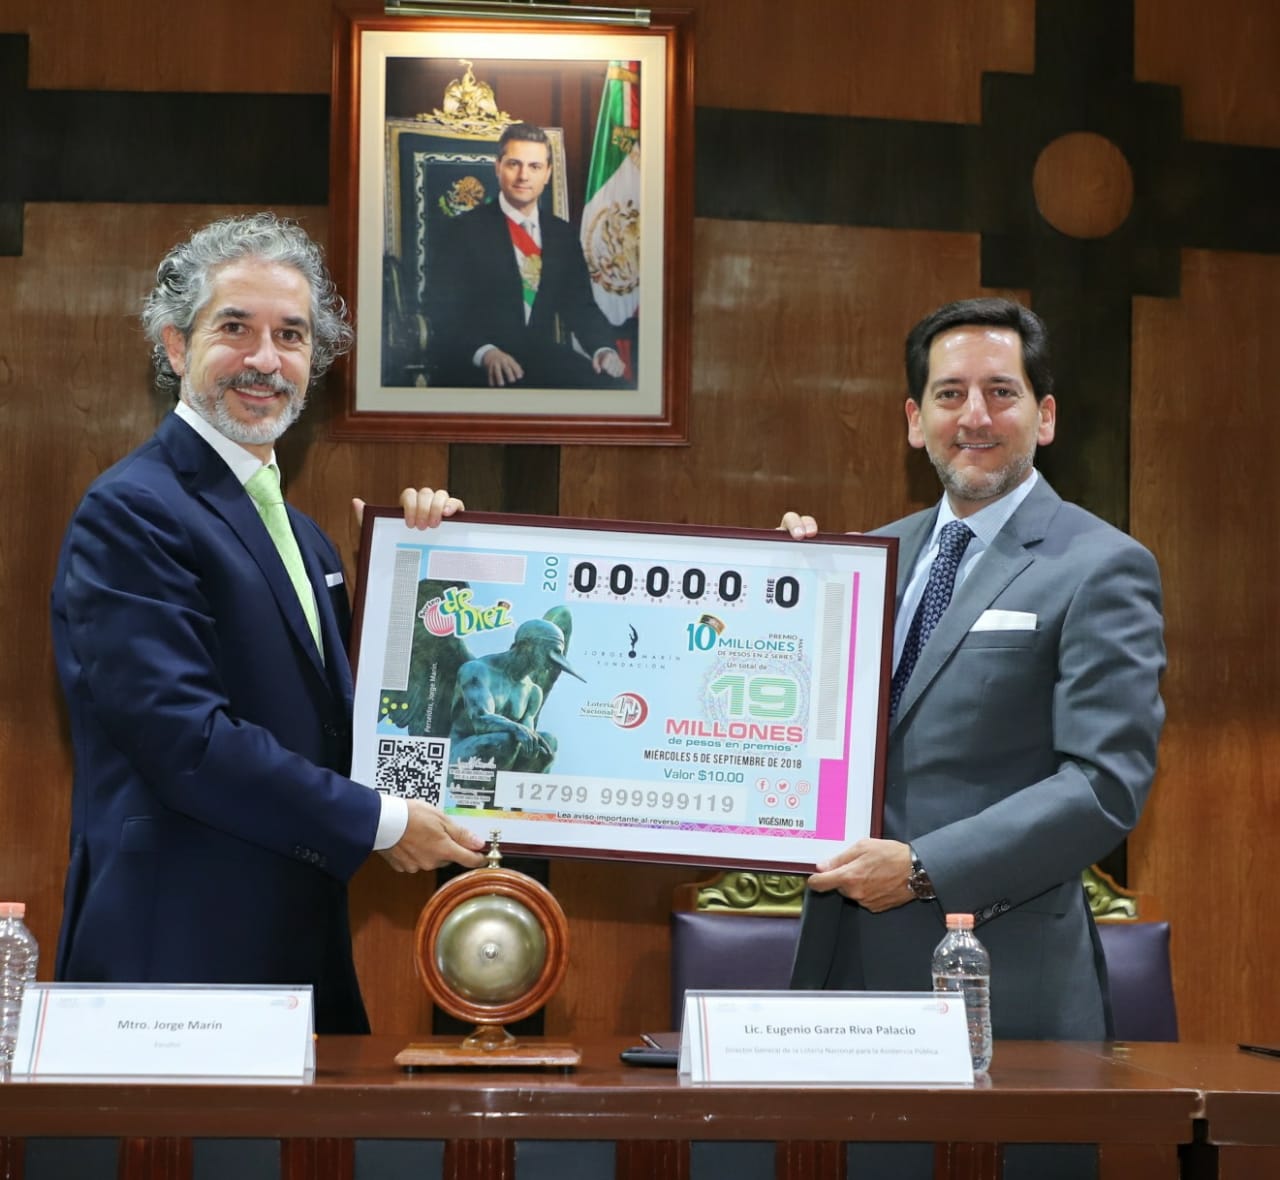 La Lotería Nacional para la Asistencia Pública (LOTENAL) dedicó su Sorteo de Diez No. 200 a la labor que realiza la Fundación Jorge Marín